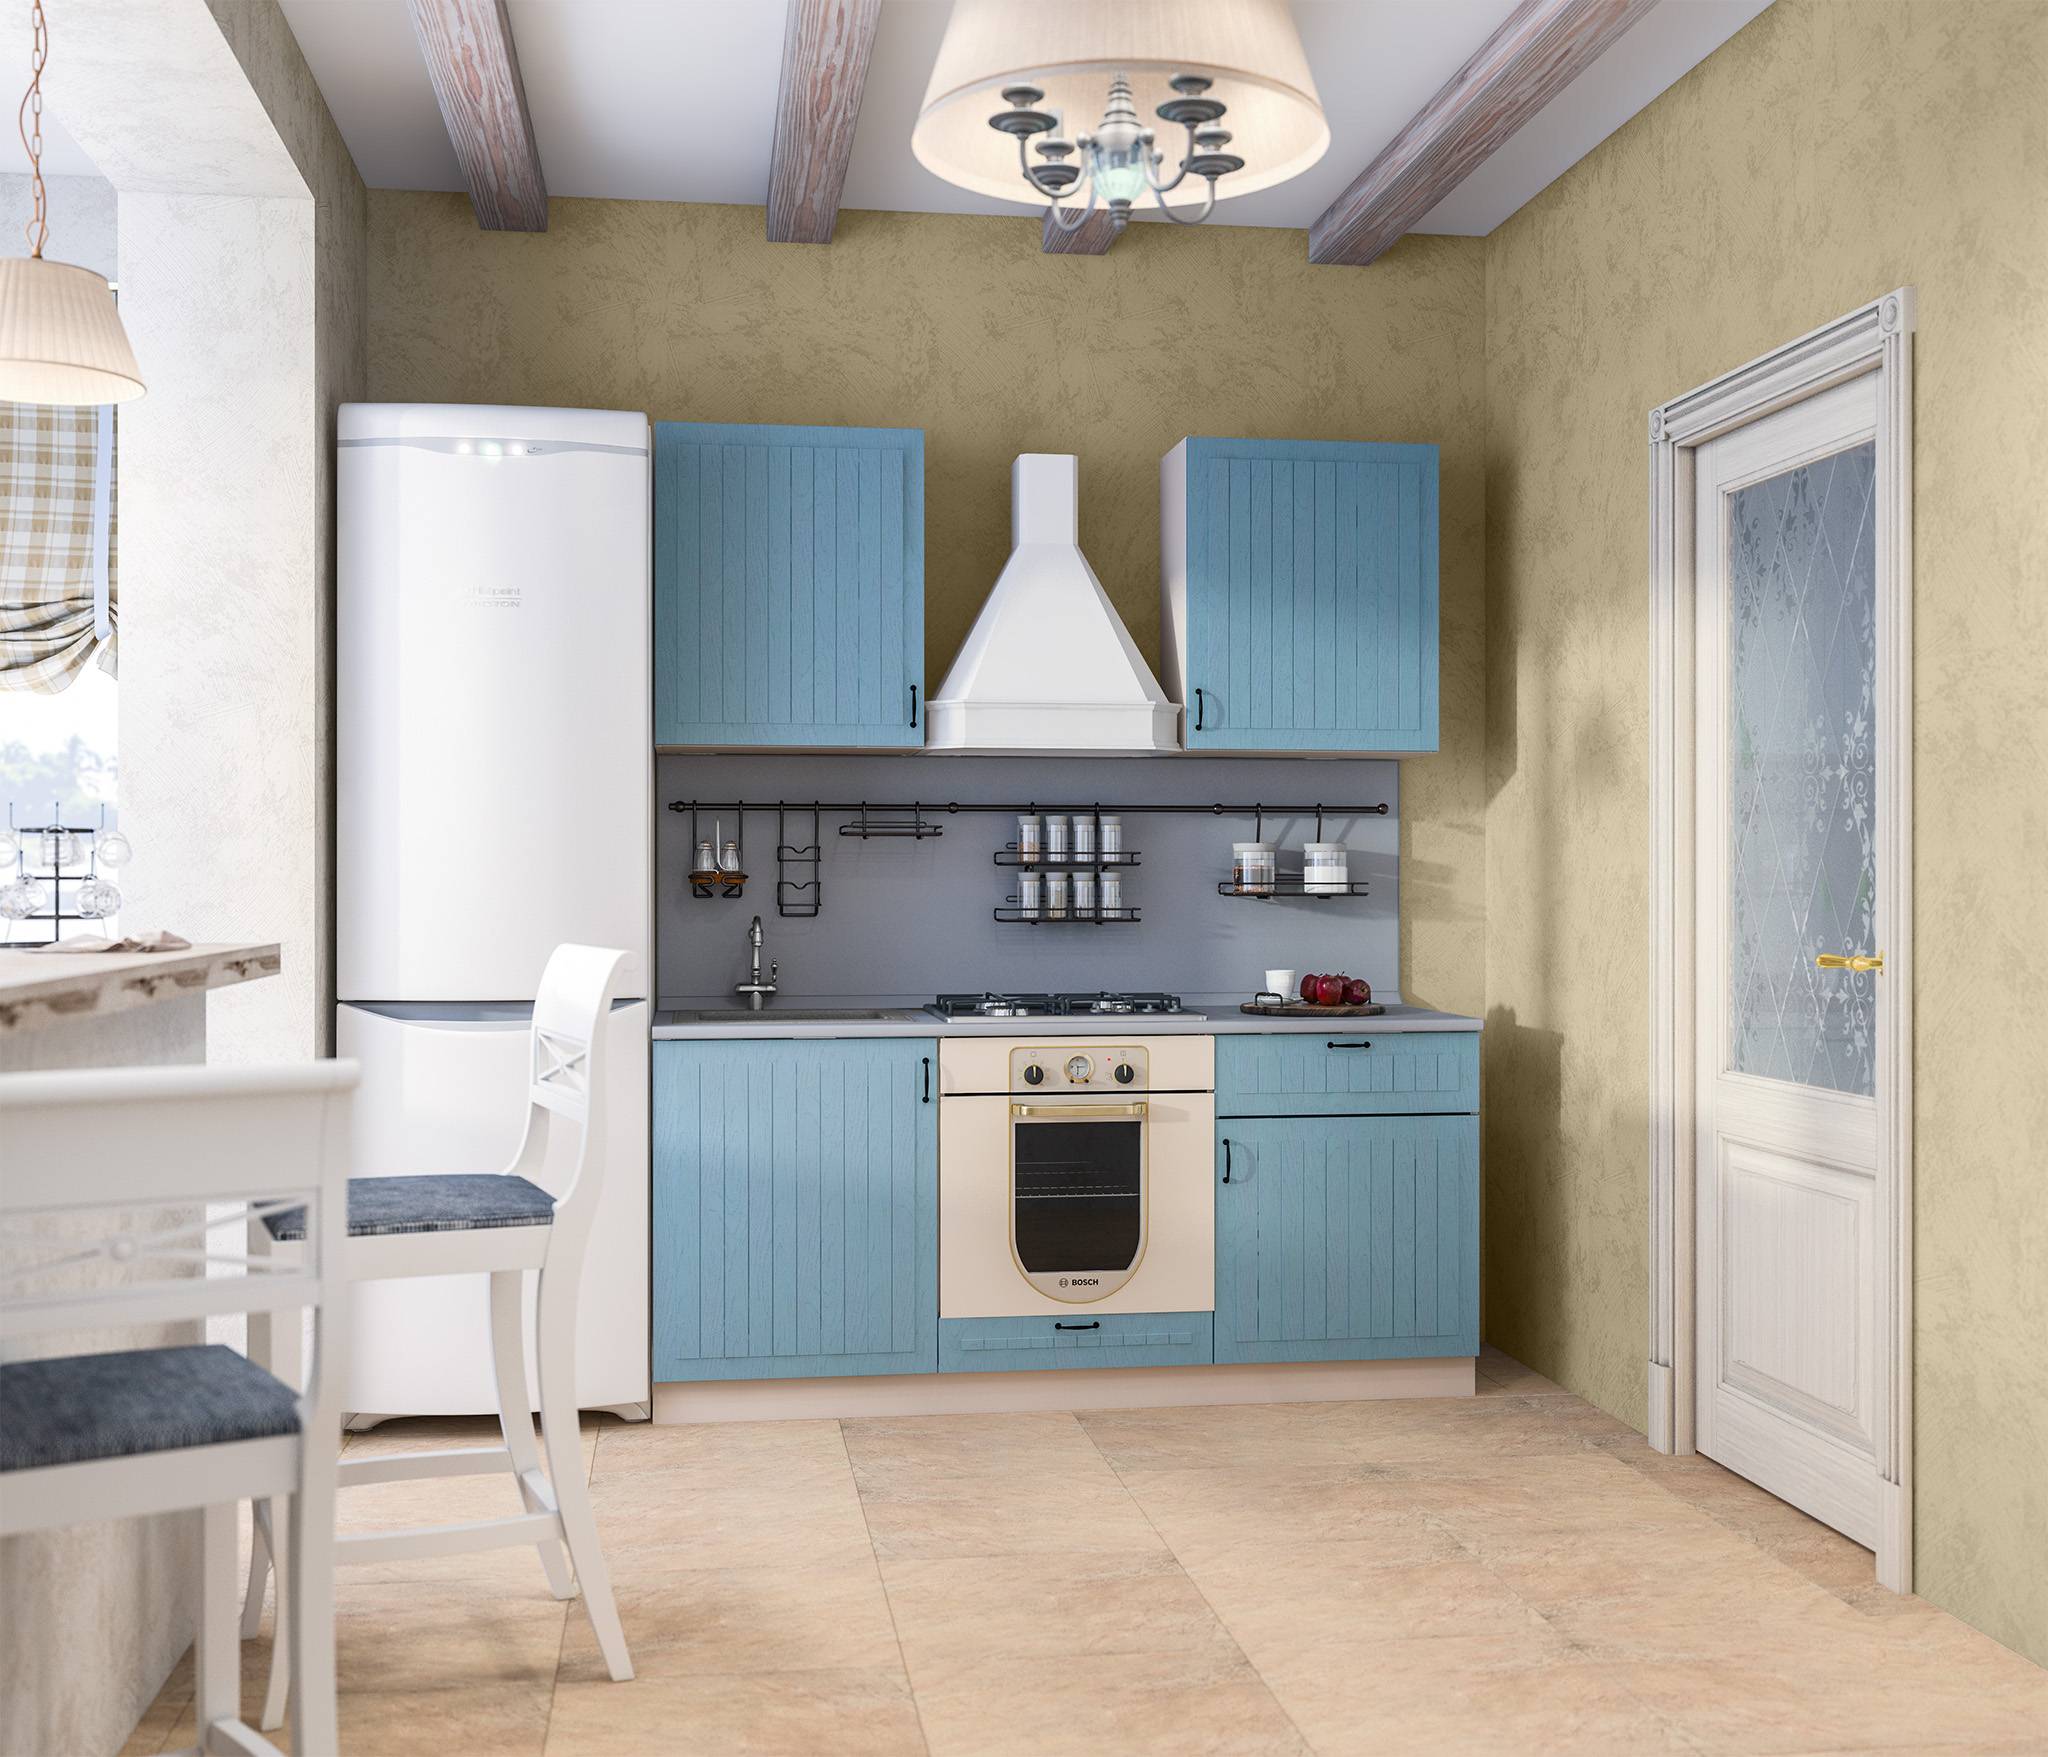 Кухни столплит: фото популярных моделей эконом-класса углового и прямого кухонного гарнитура из каталога производителя за 2022 год